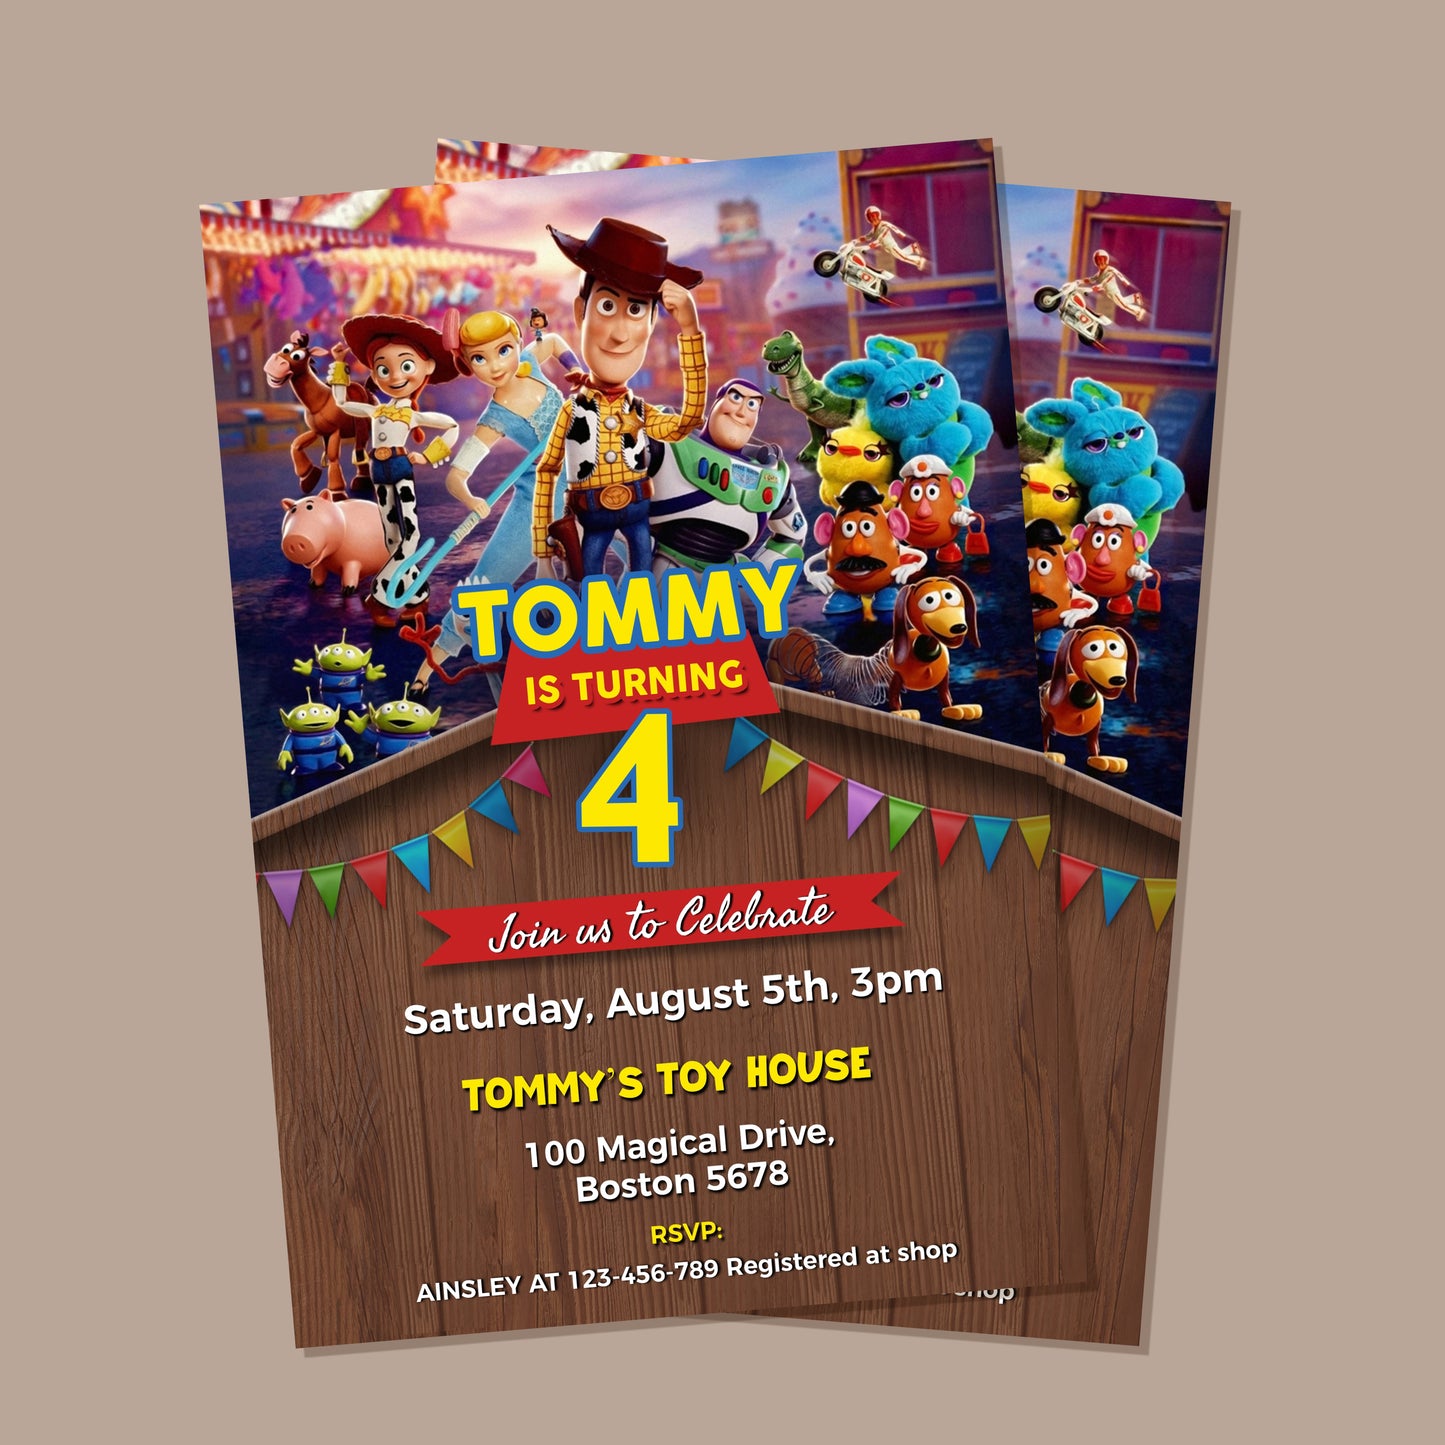 Toy Story Birthday Invitation